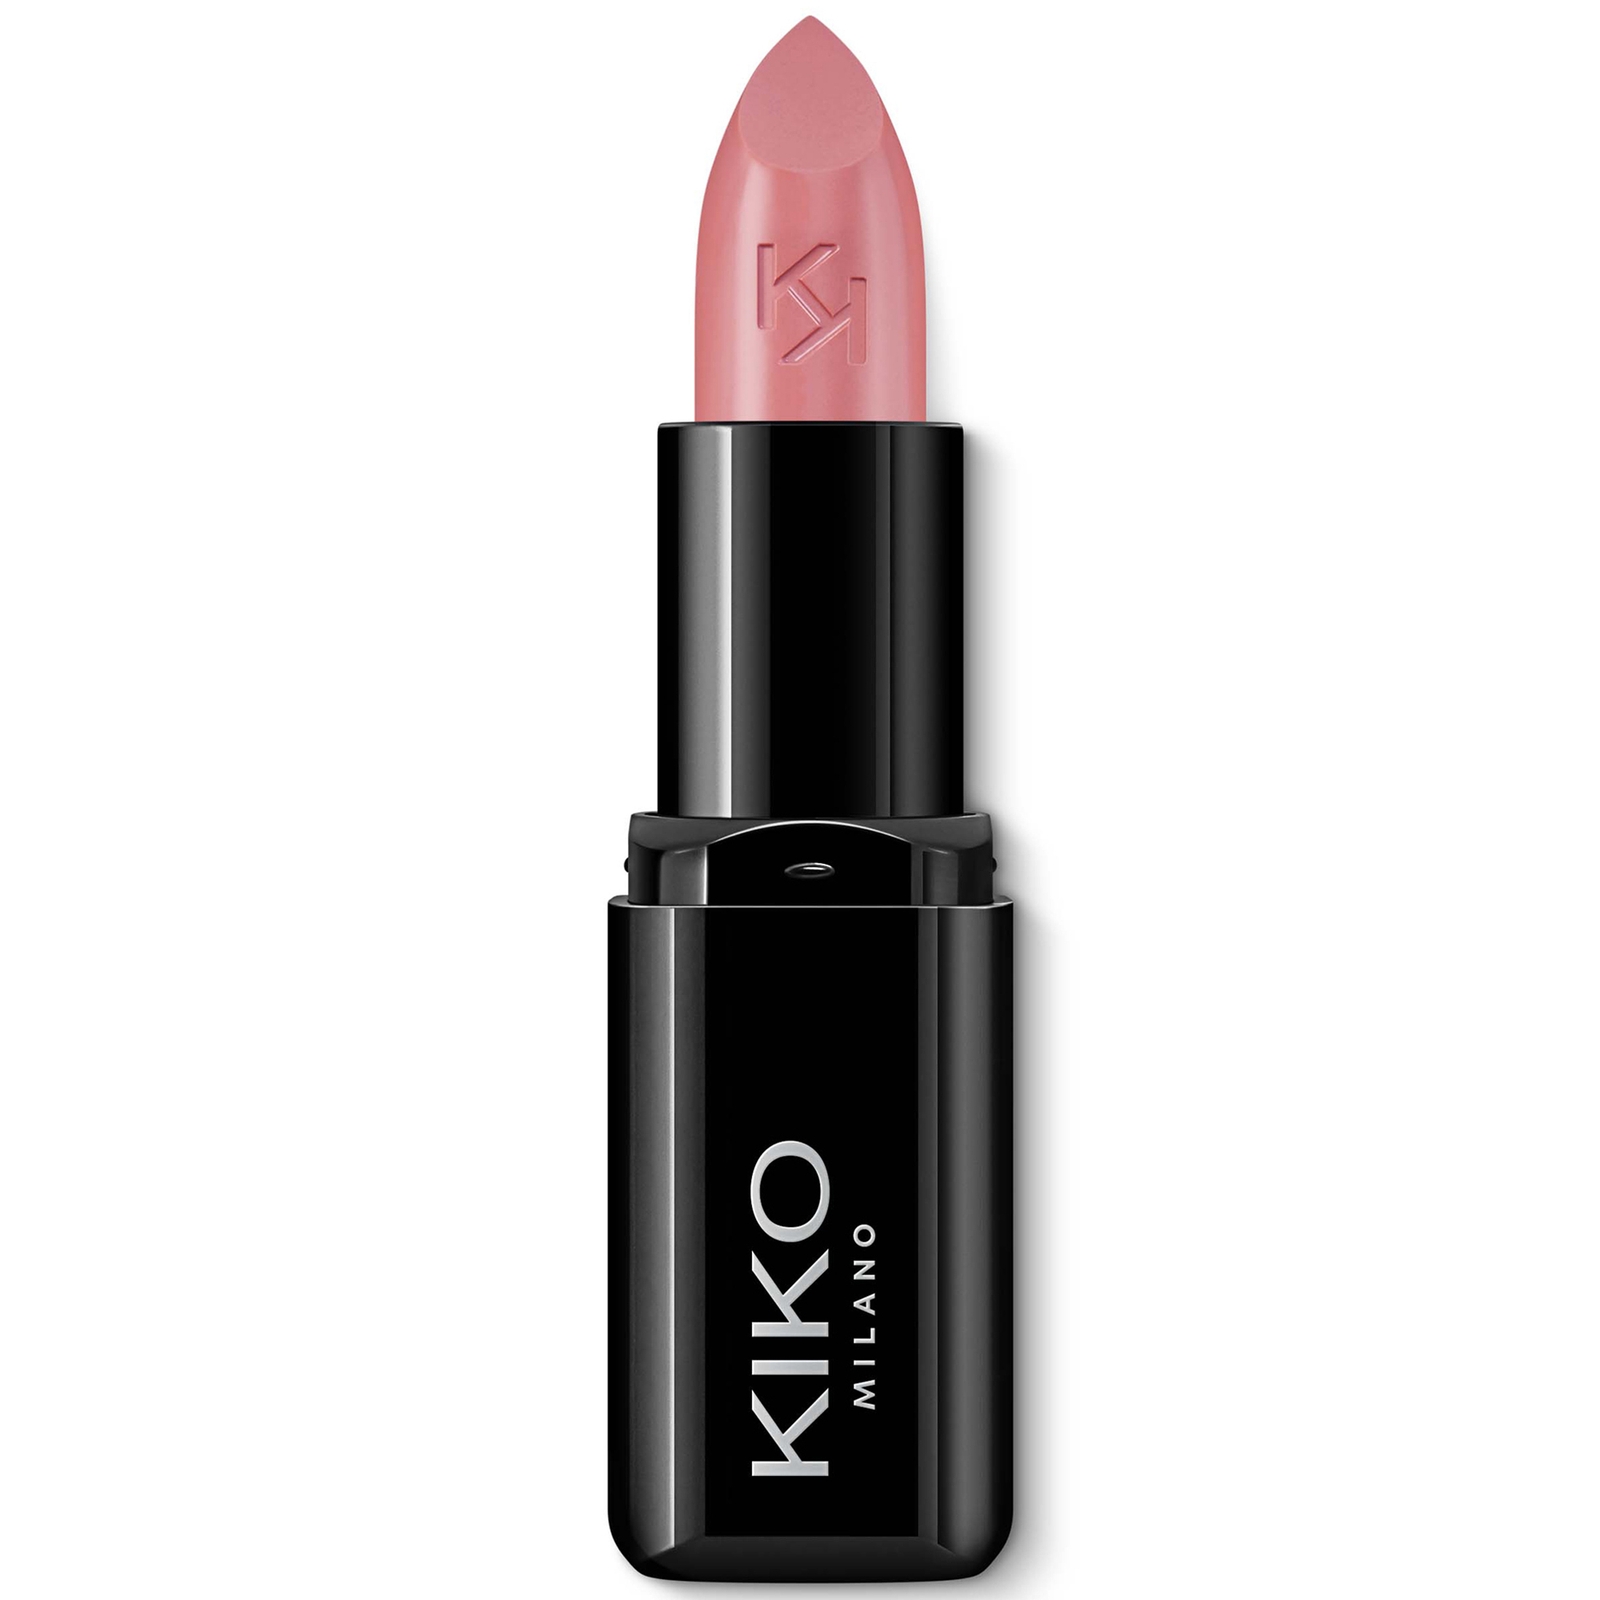 KIKO Milano Smart Fusion Lipstick 3g (Various Shades) - 406 Warm Rose von KIKO Milano